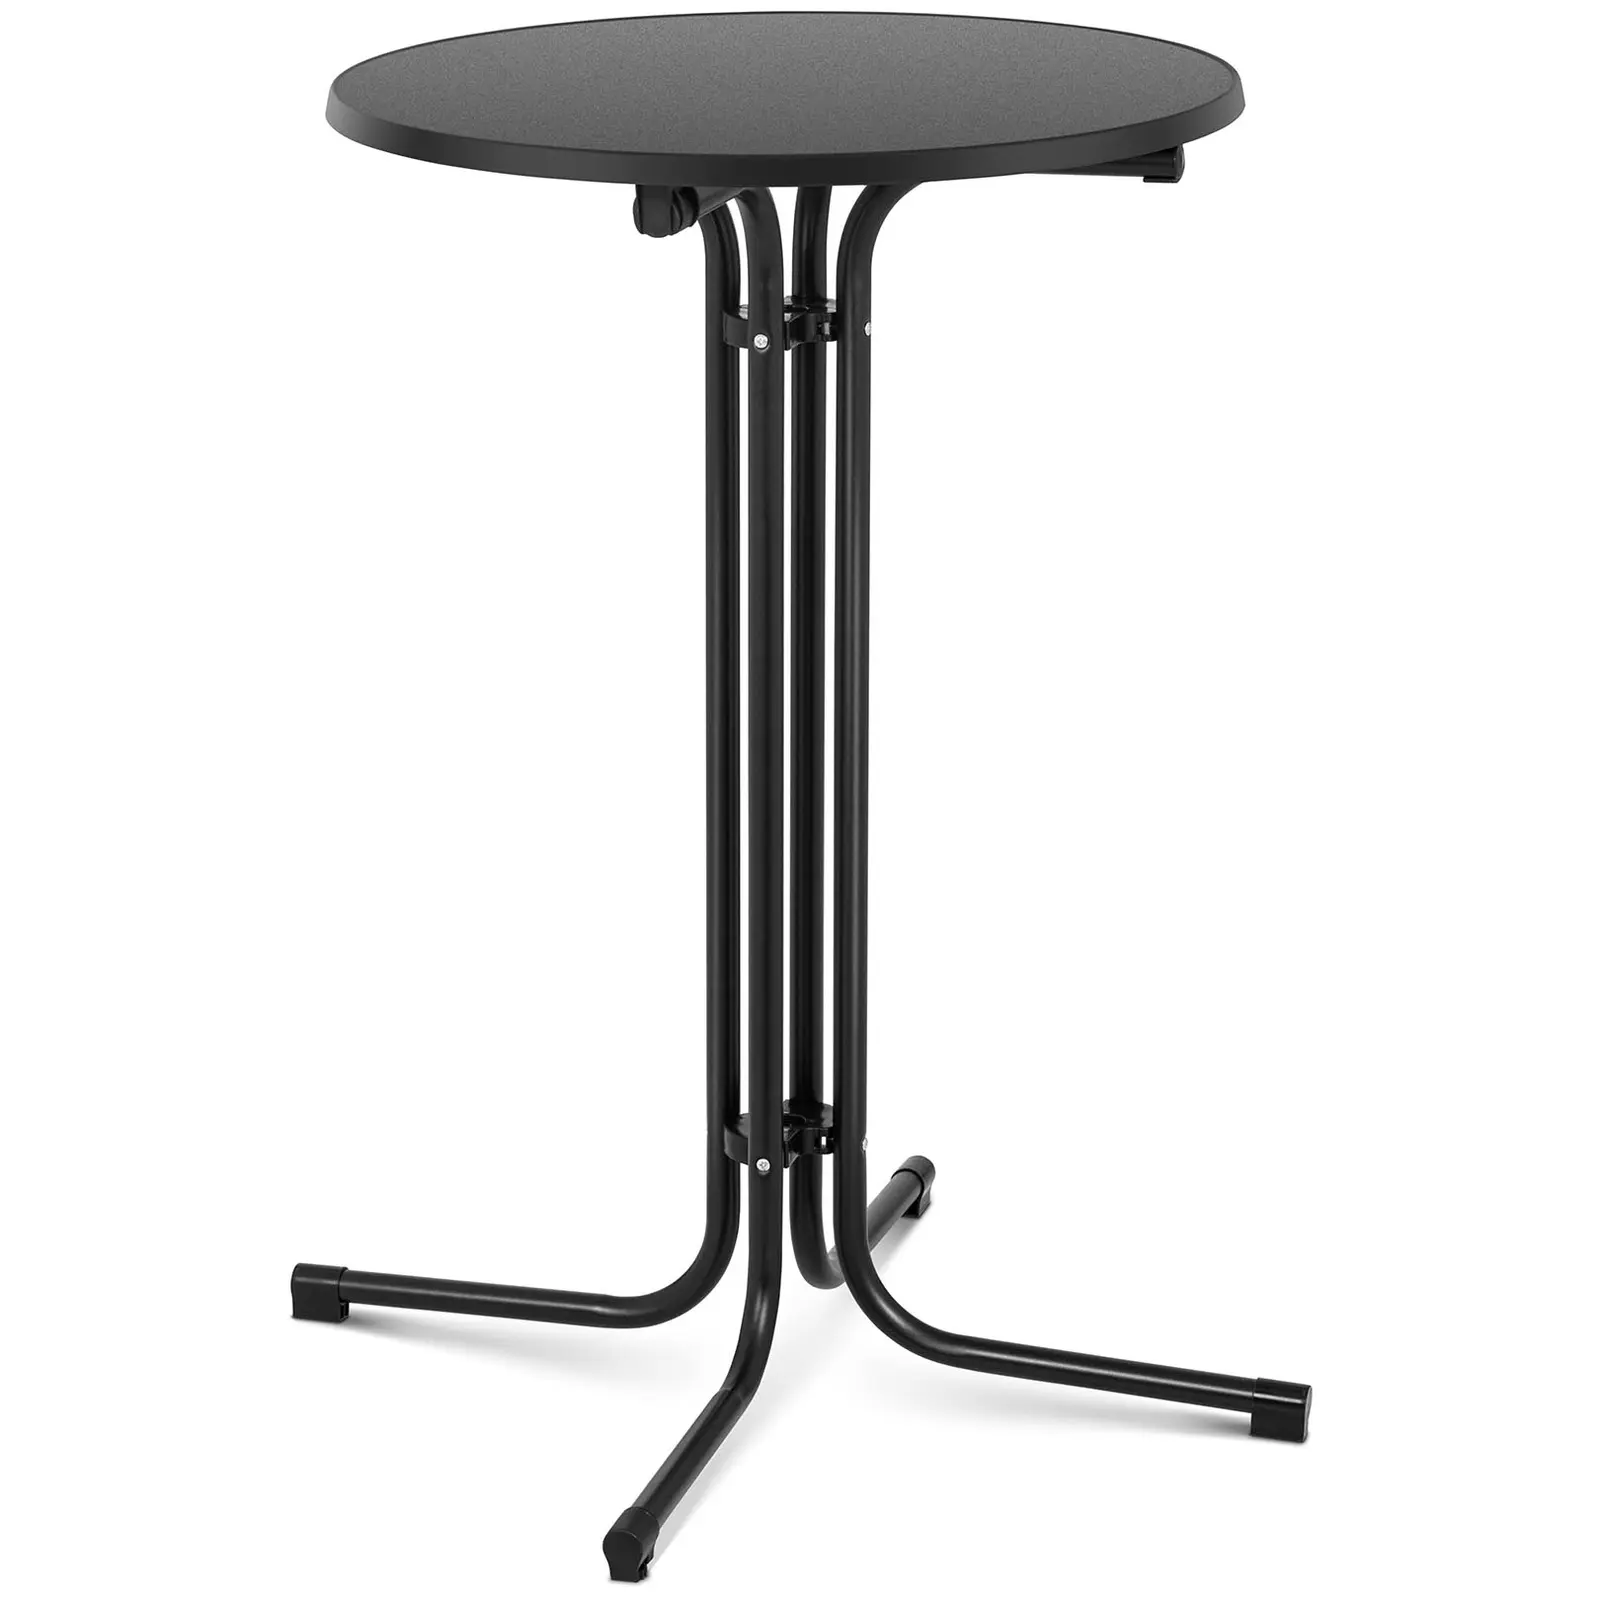 Ståbord - 70 cm i diameter - sammenklappeligt - sort